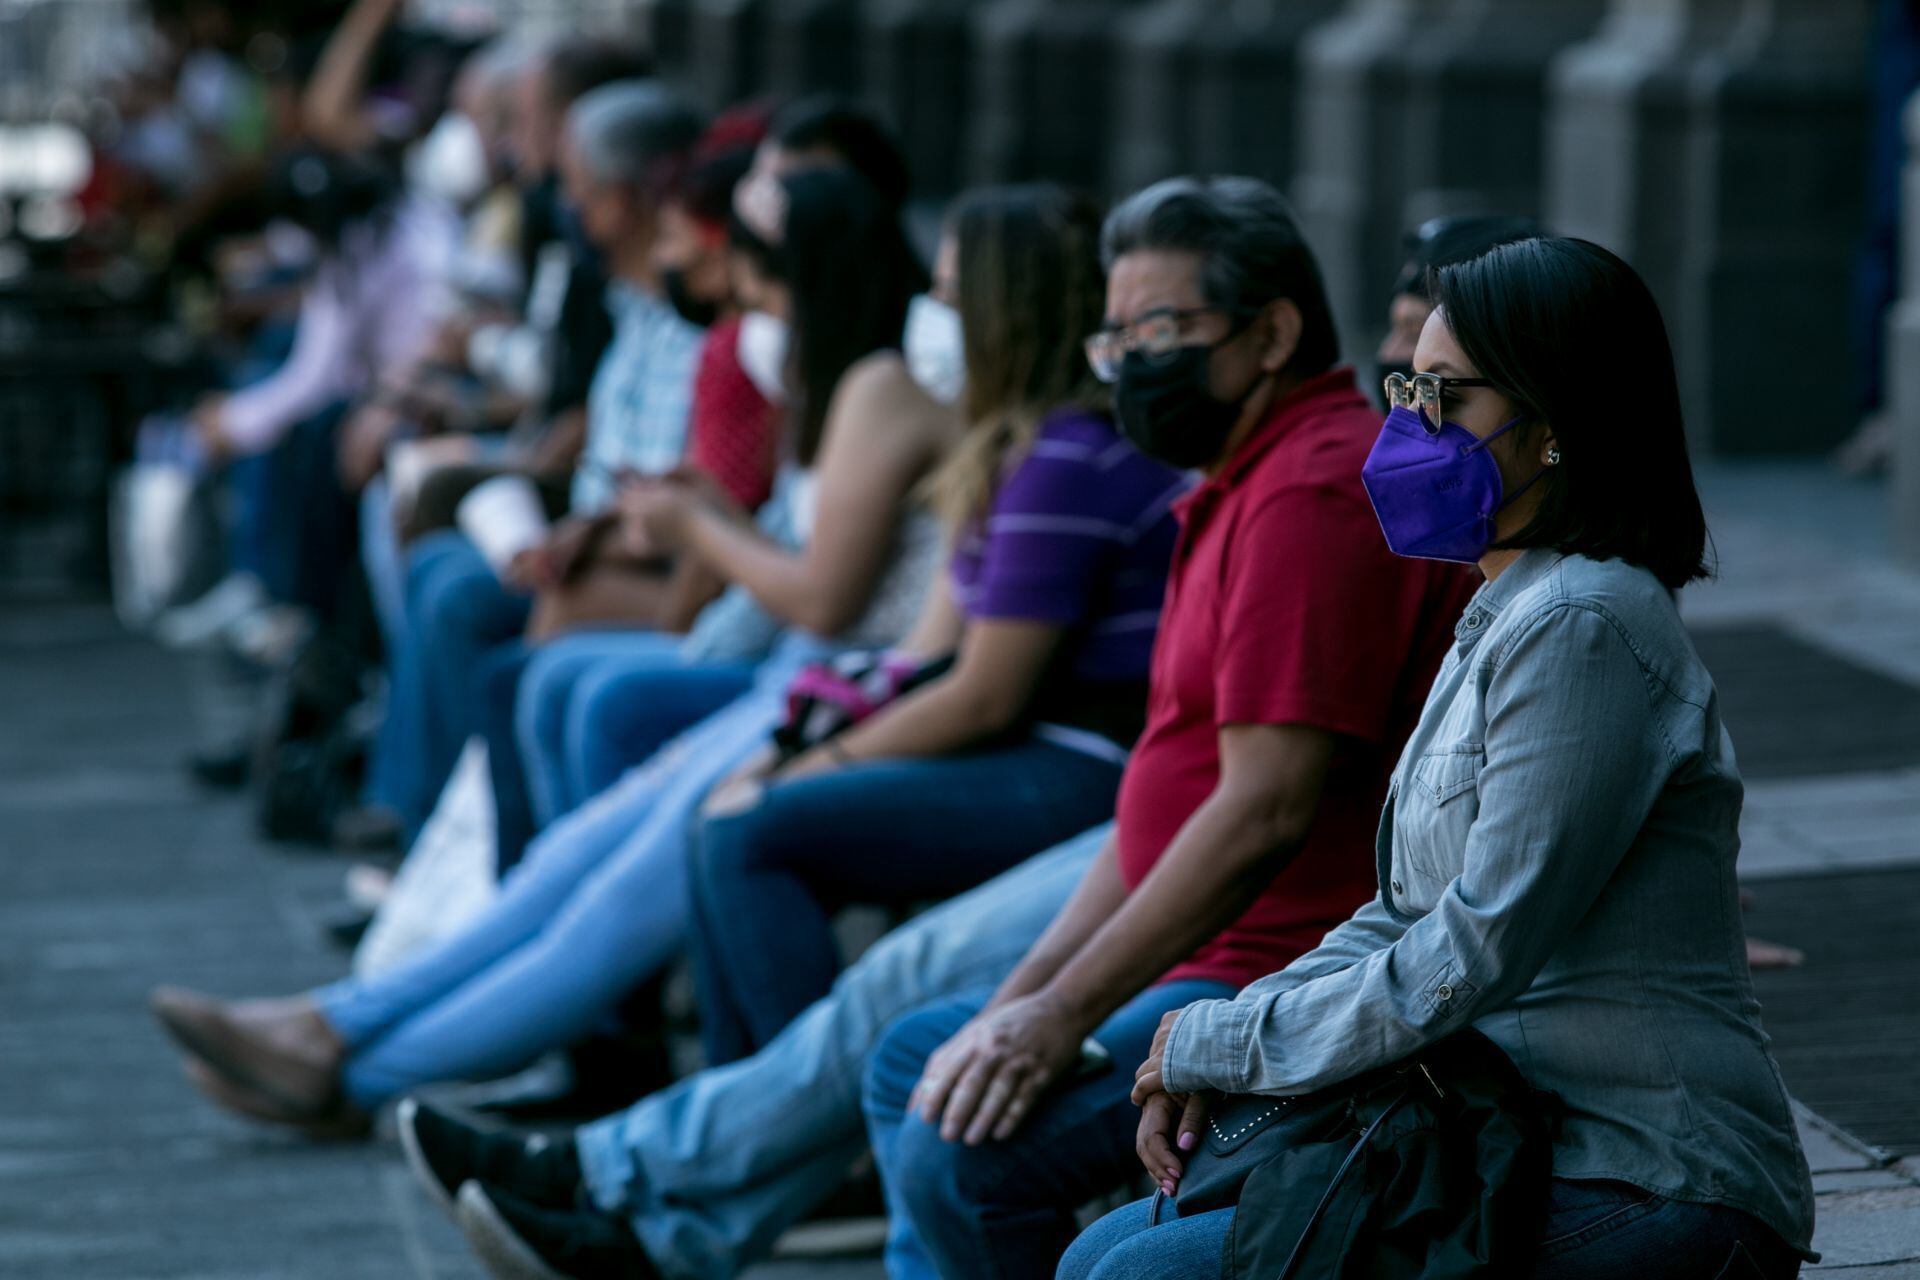 Quinta ola de COVID-19 en México: Estos son los estados con más casos